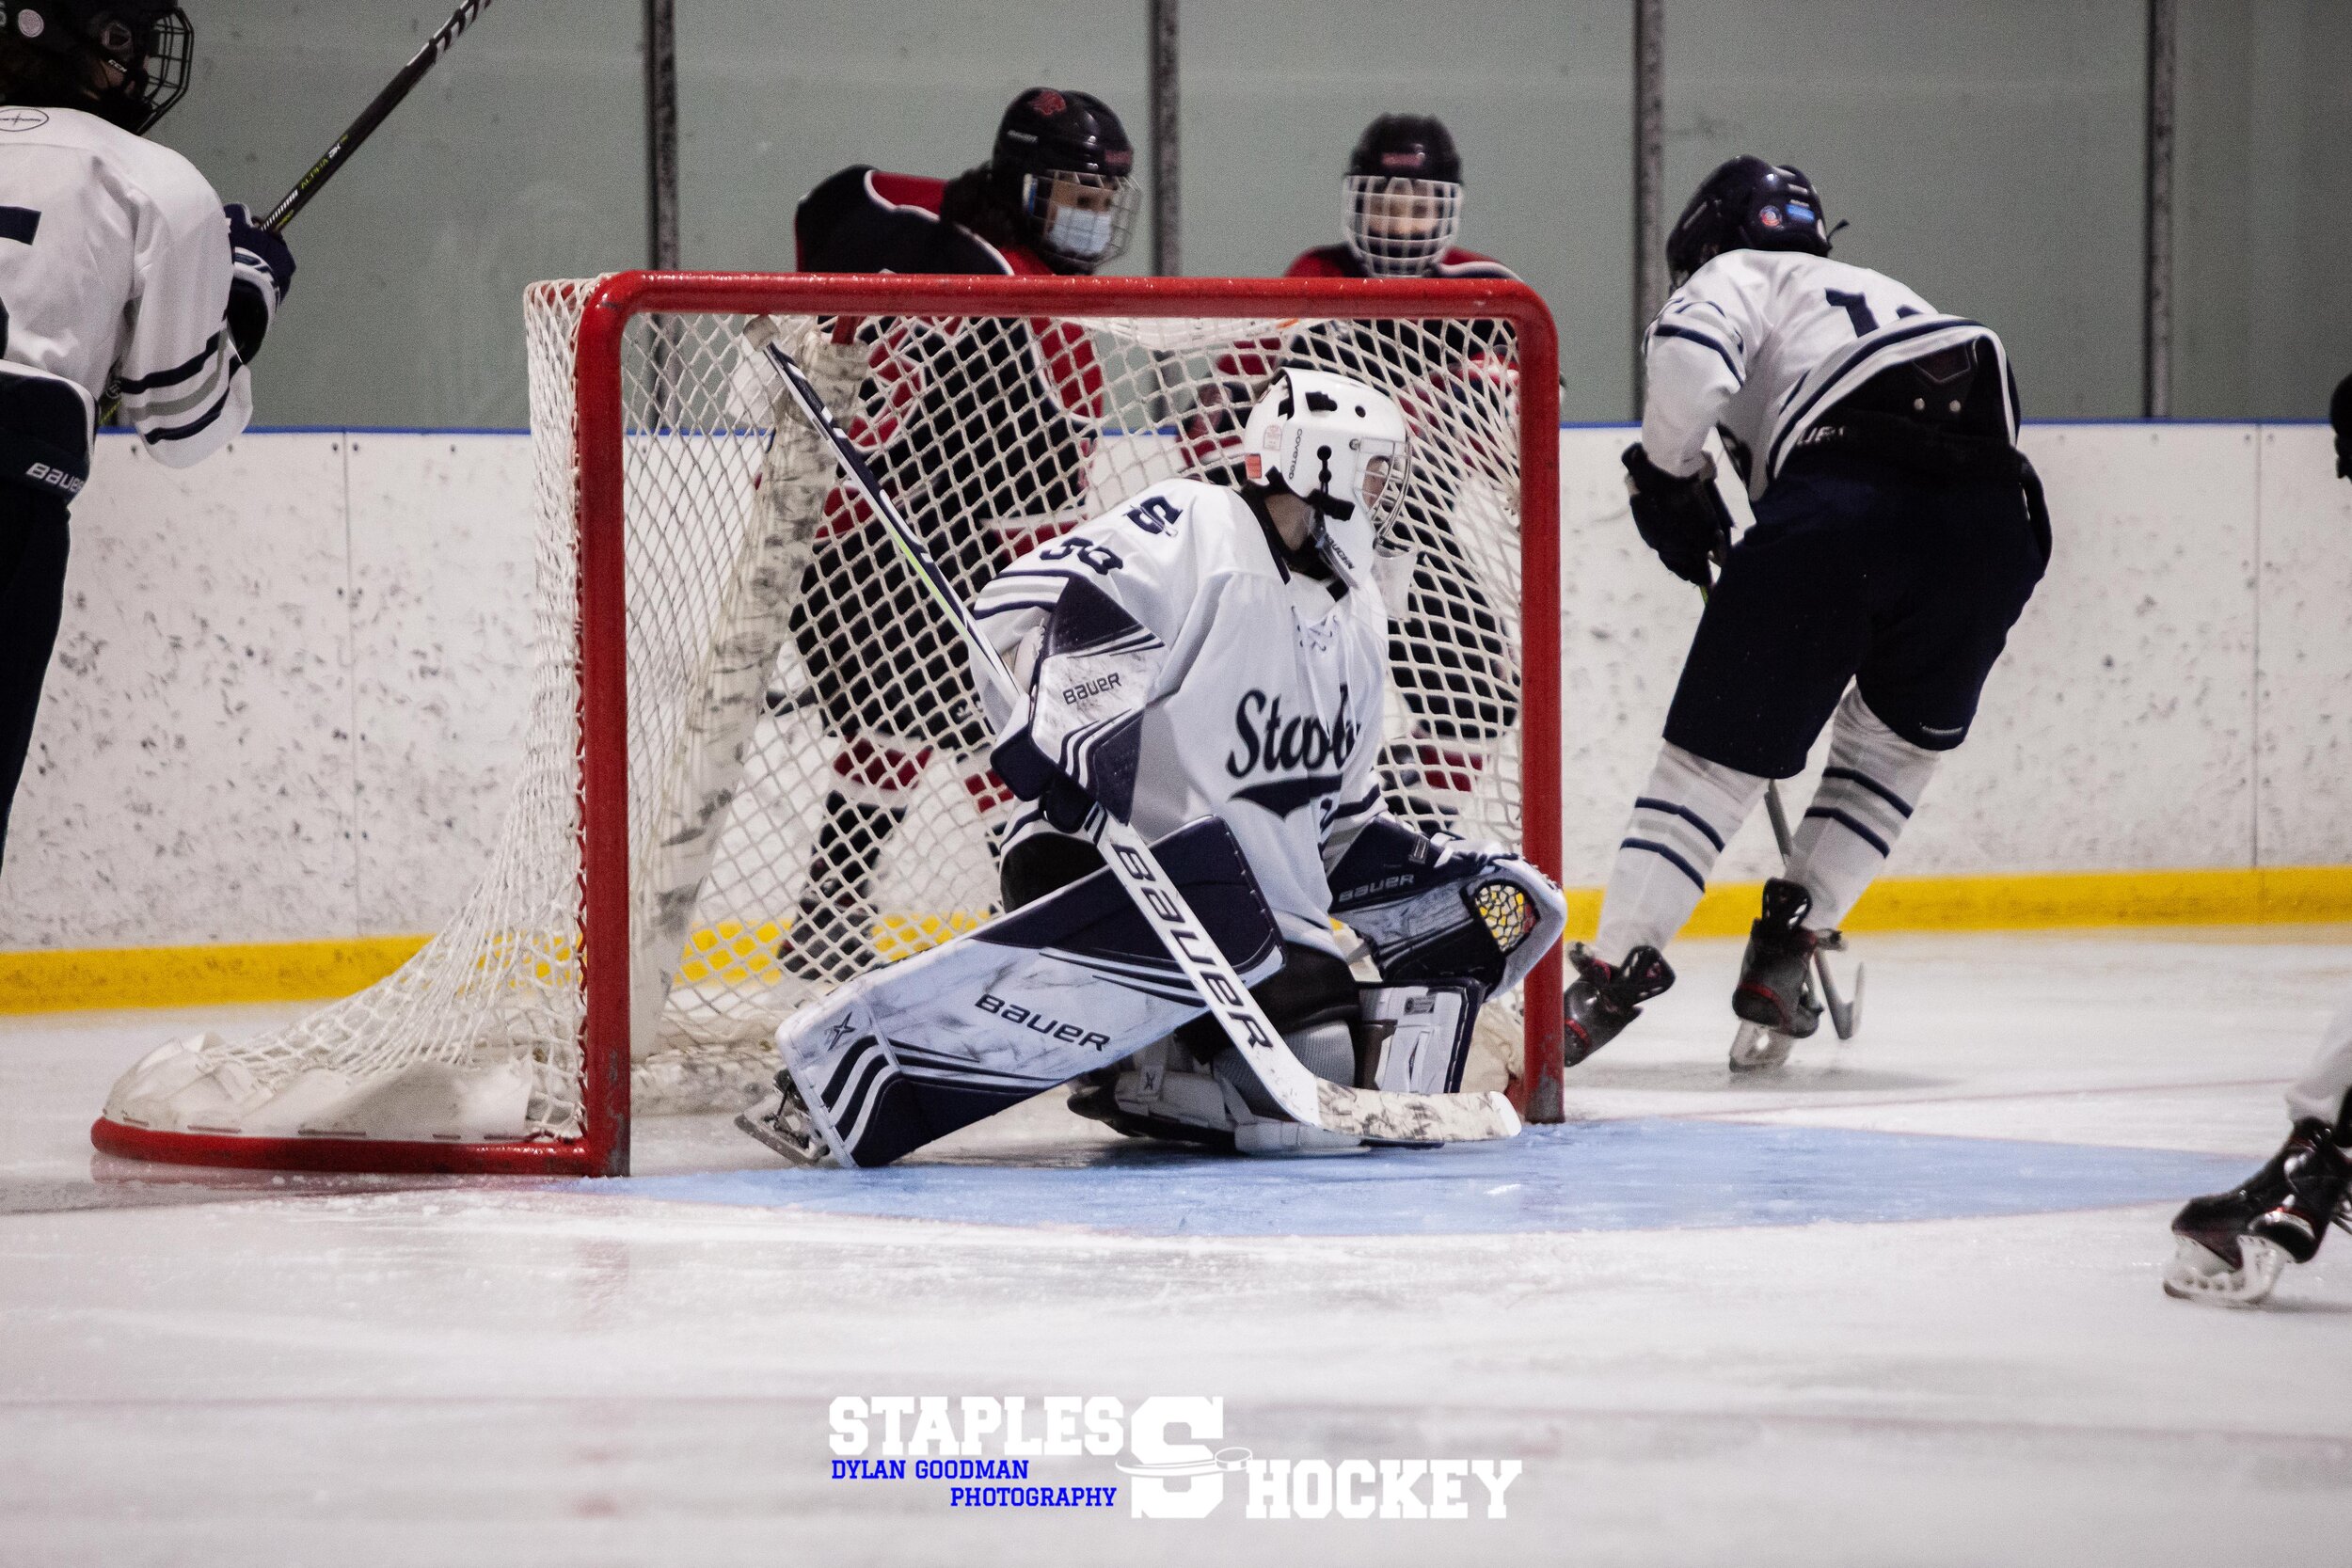 327-Staples Varsity Boys Hockey vs. Masuk - February 27, 2021 - Dylan Goodman Photography.jpg